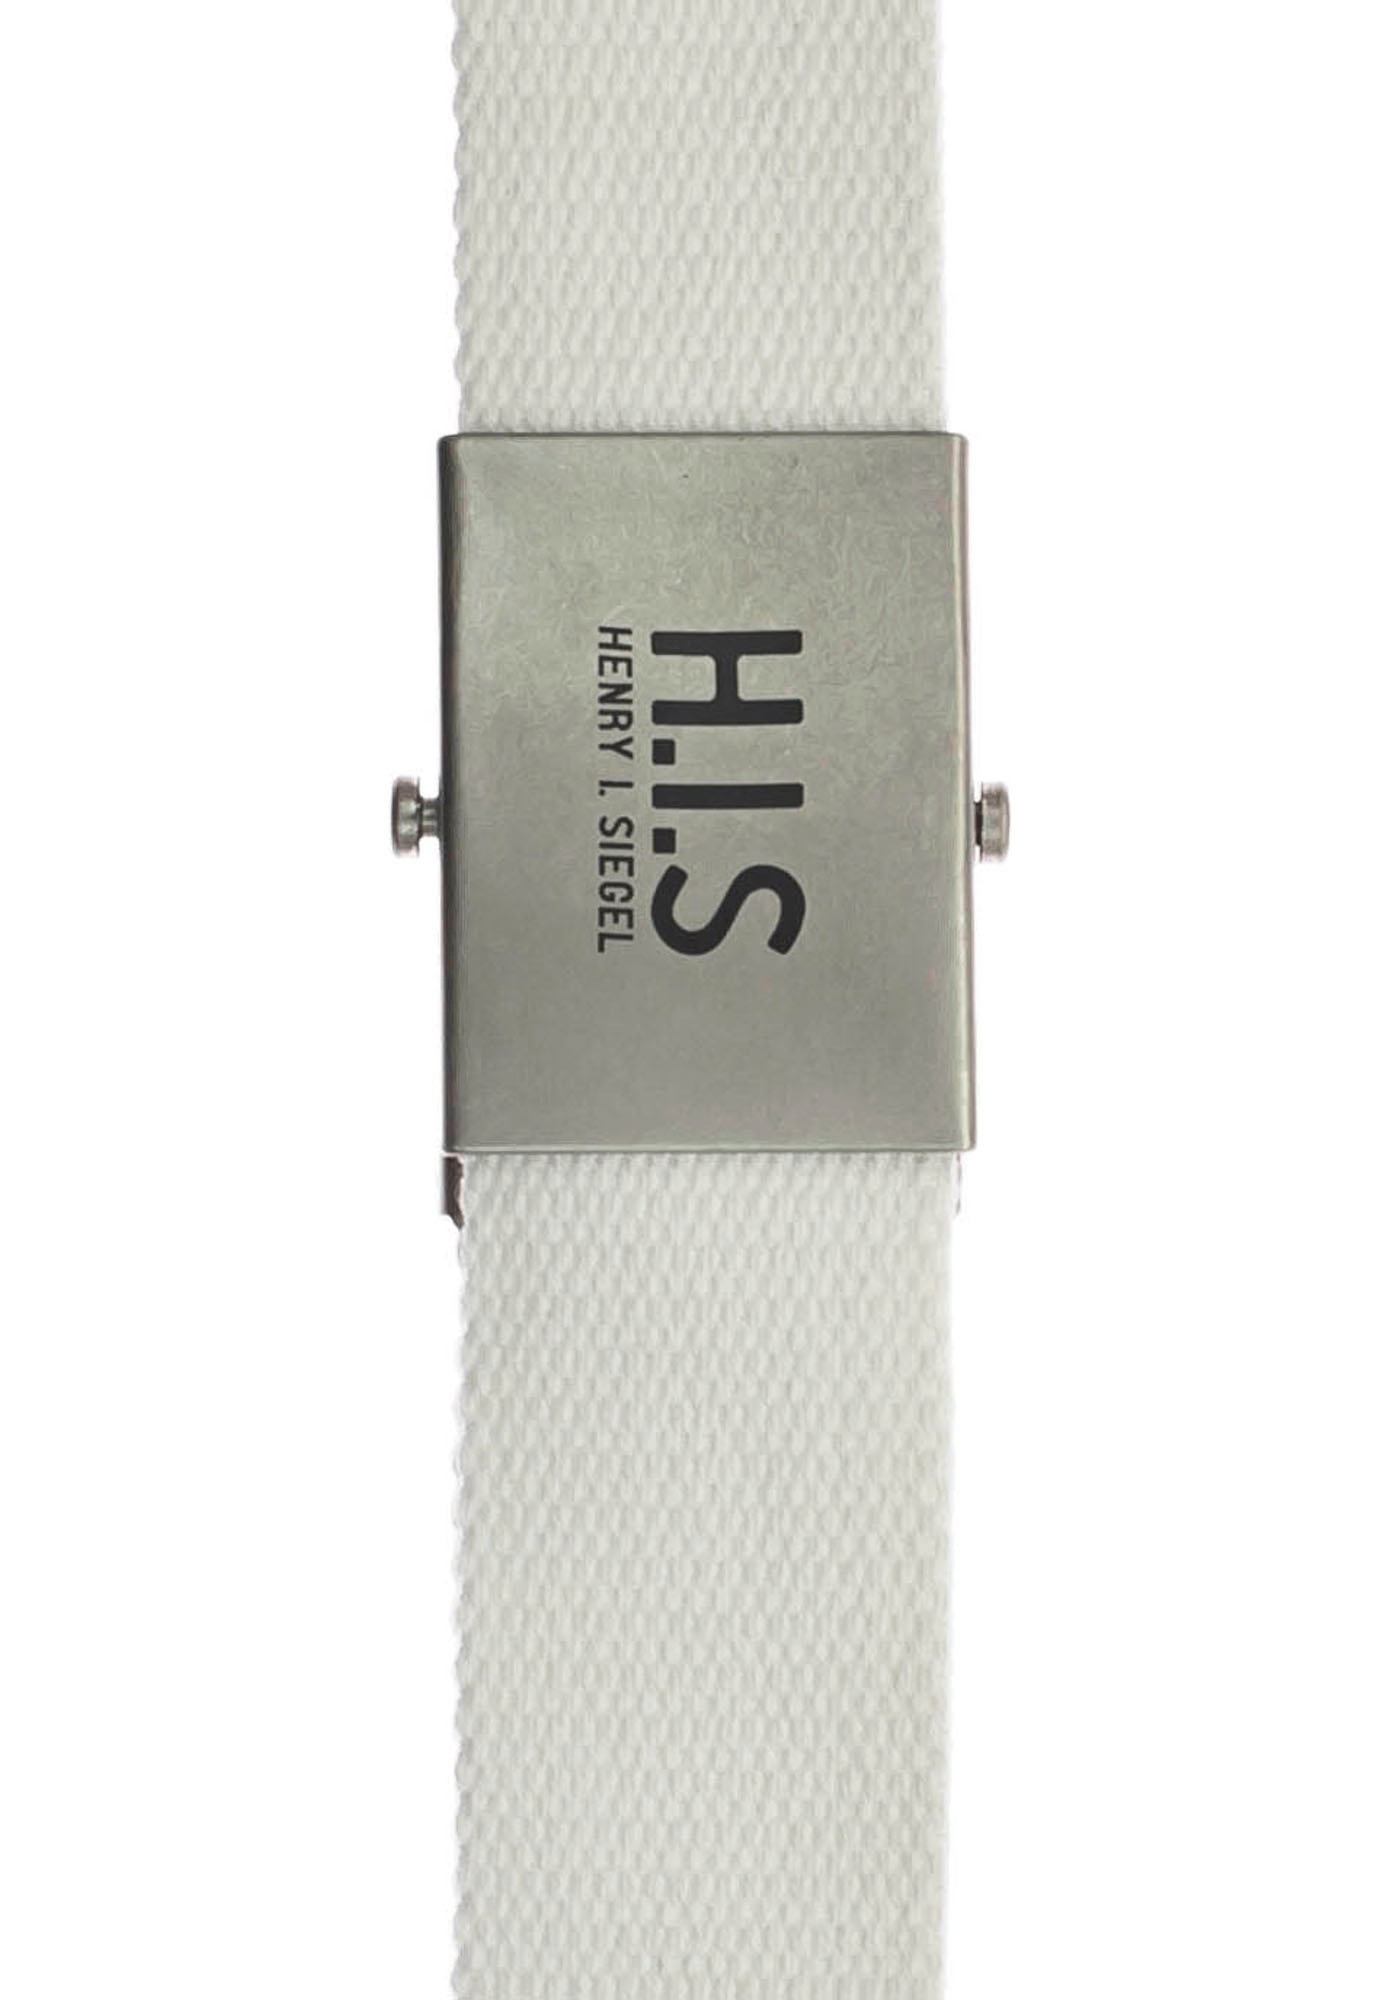 H.I.S Stoffgürtel, Bandgürtel mit H.I.S Logo auf der Koppelschließe online  kaufen | UNIVERSAL